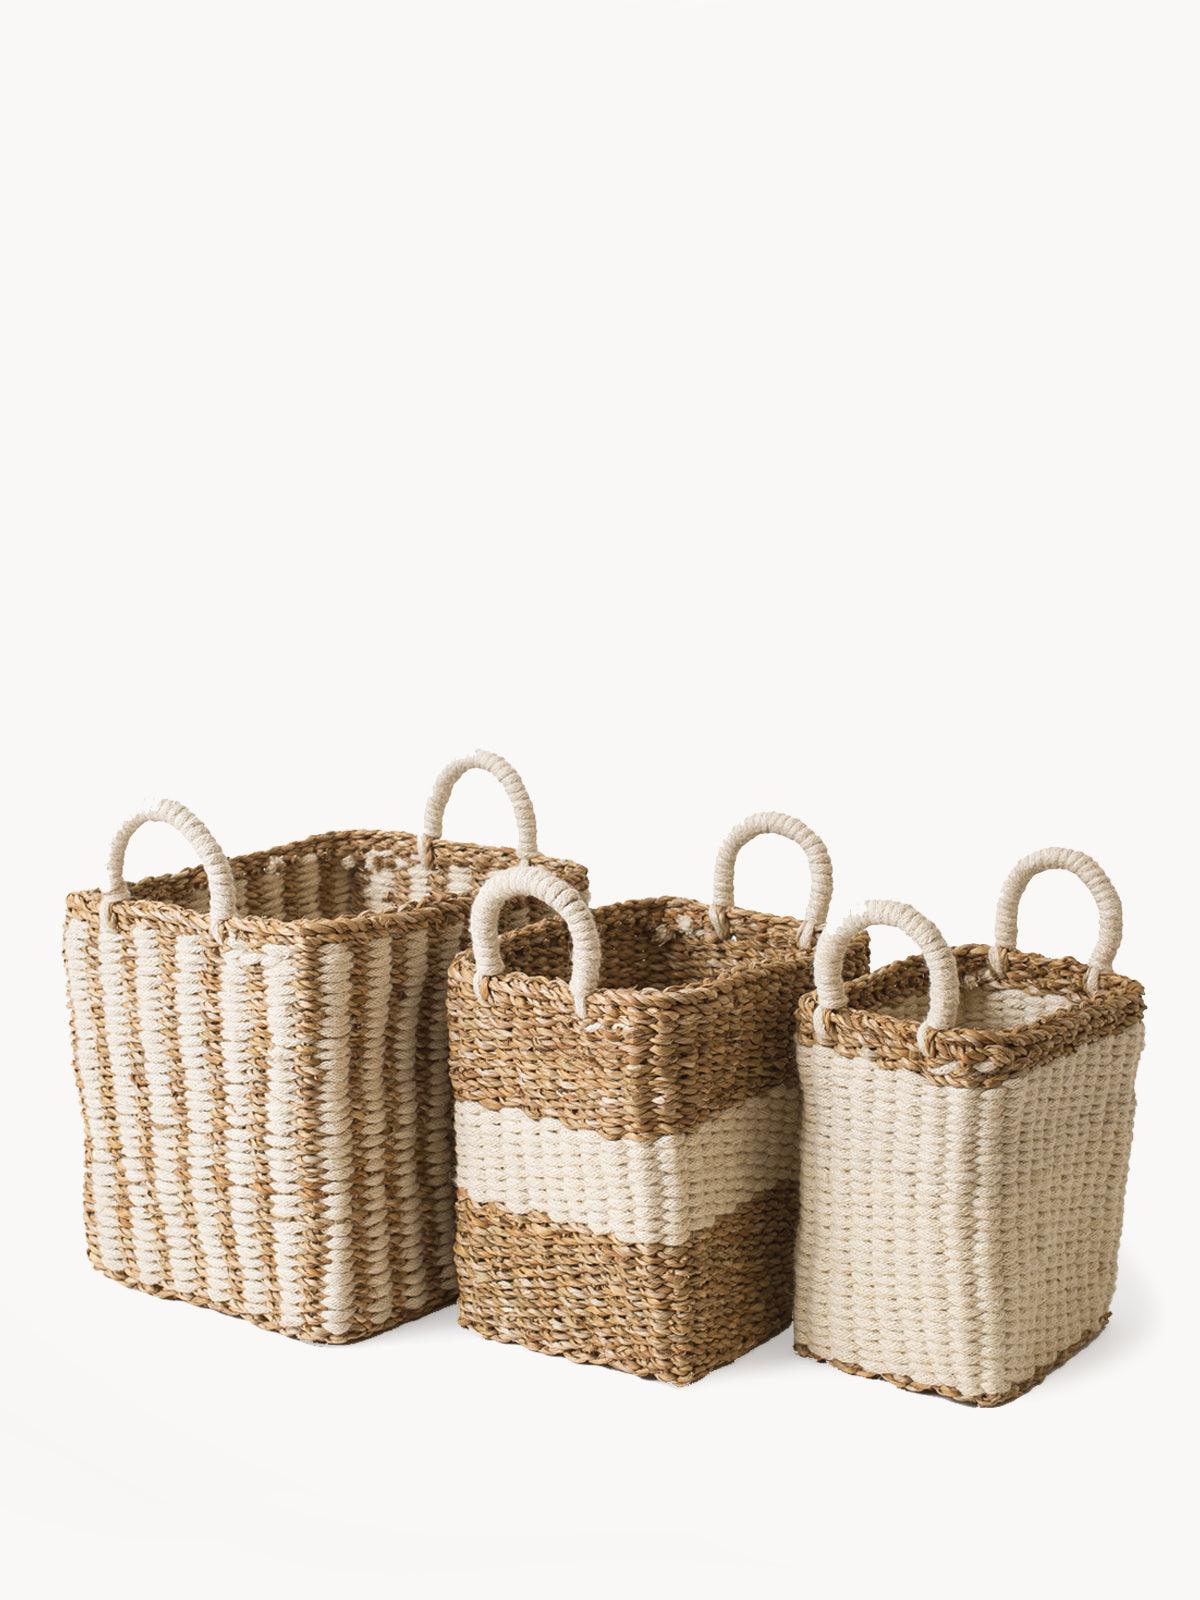 Ula Storage Basket - Plant Paradise Boutique